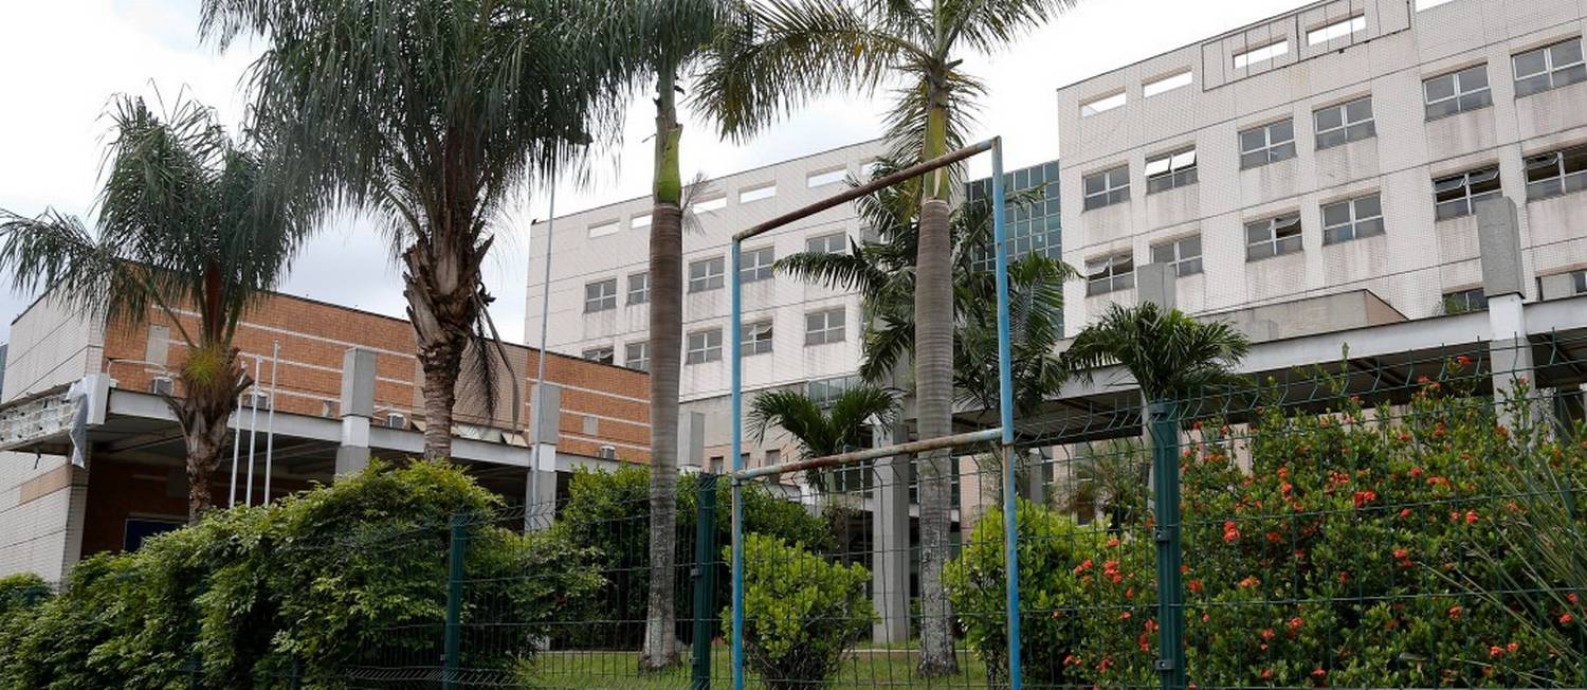 Hospital municipal Ronaldo Gazolla, referência no combate à Covid-19: cirurgias eletivas estavam suspensas Foto: Roberto Moreyra em 9-2-2021 / Agência O Globo